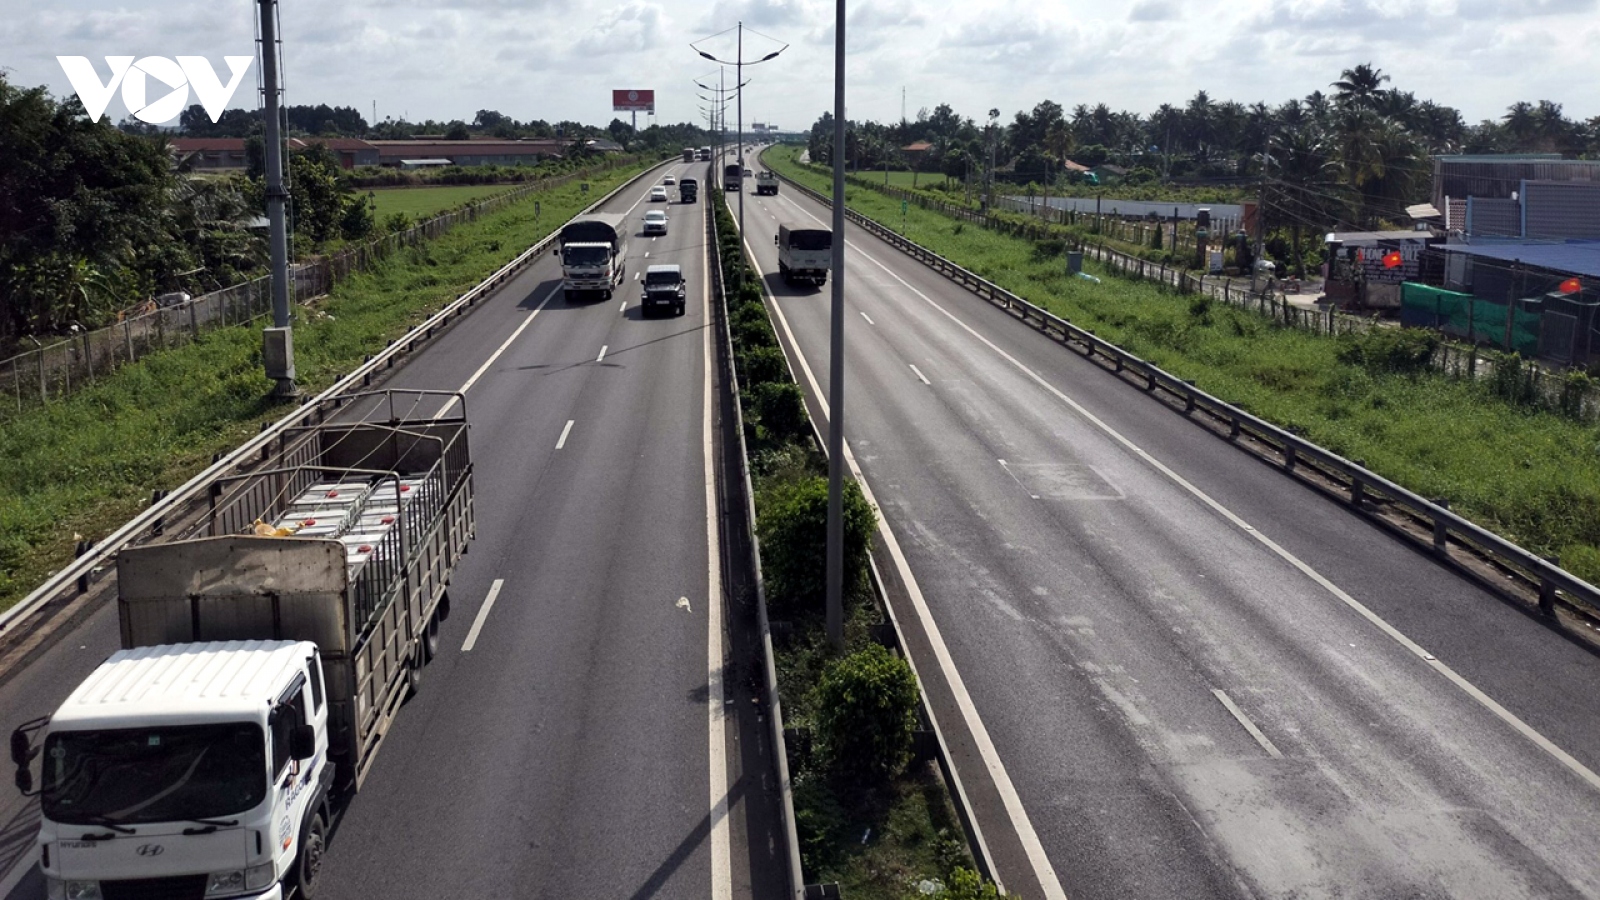 BOT cao tốc Trung Lương - Mỹ Thuận chậm bồi thường cho hàng trăm nhà dân